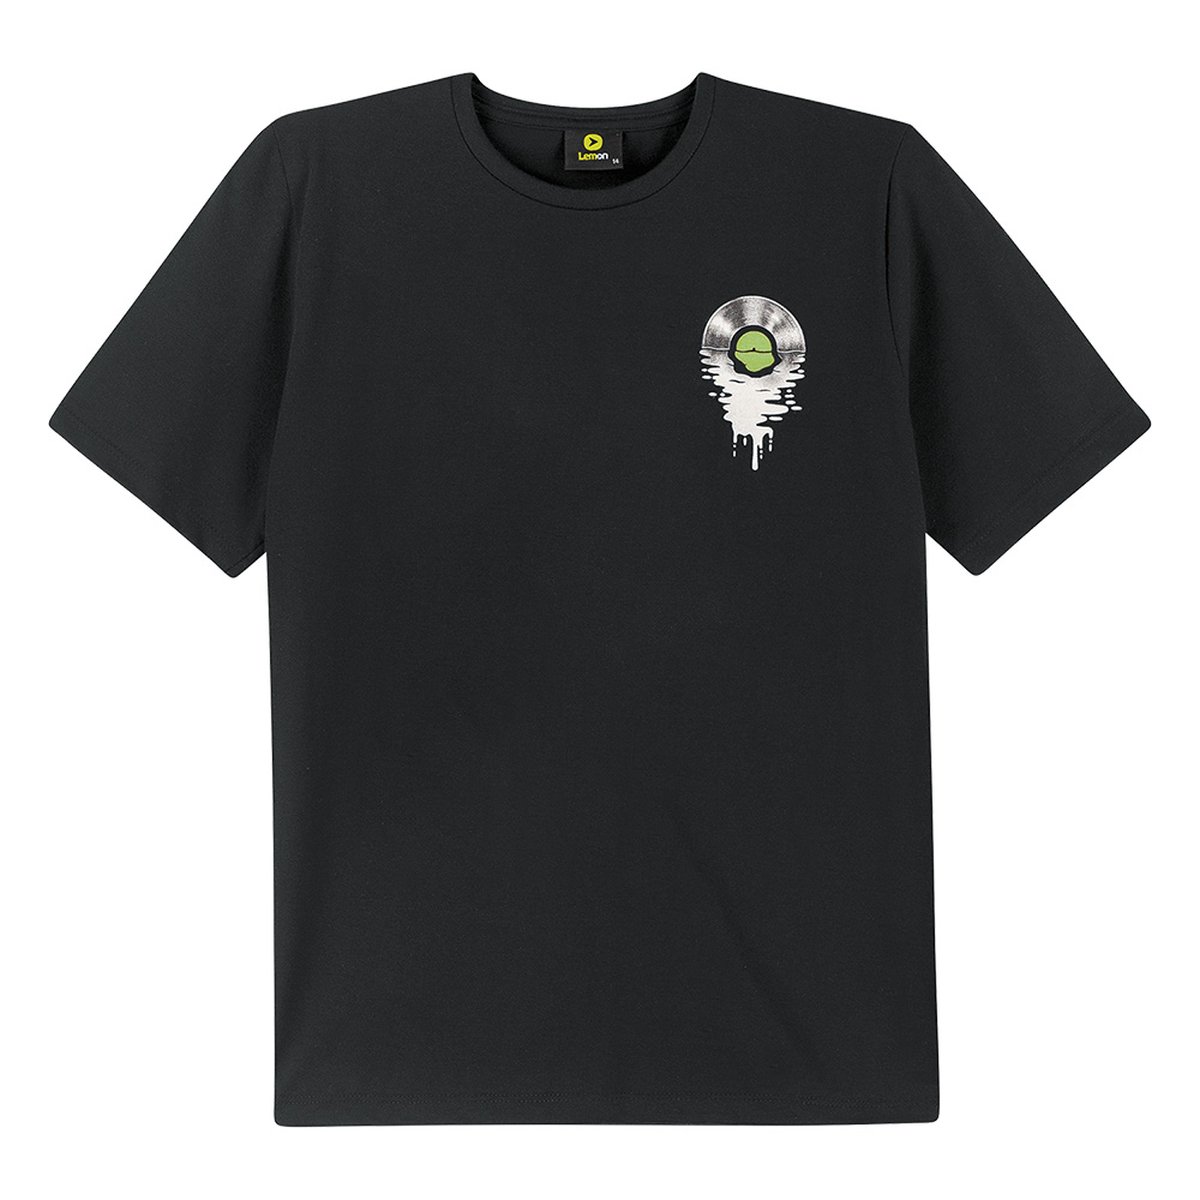 Camiseta Menino Lemon em Algodão - Preto